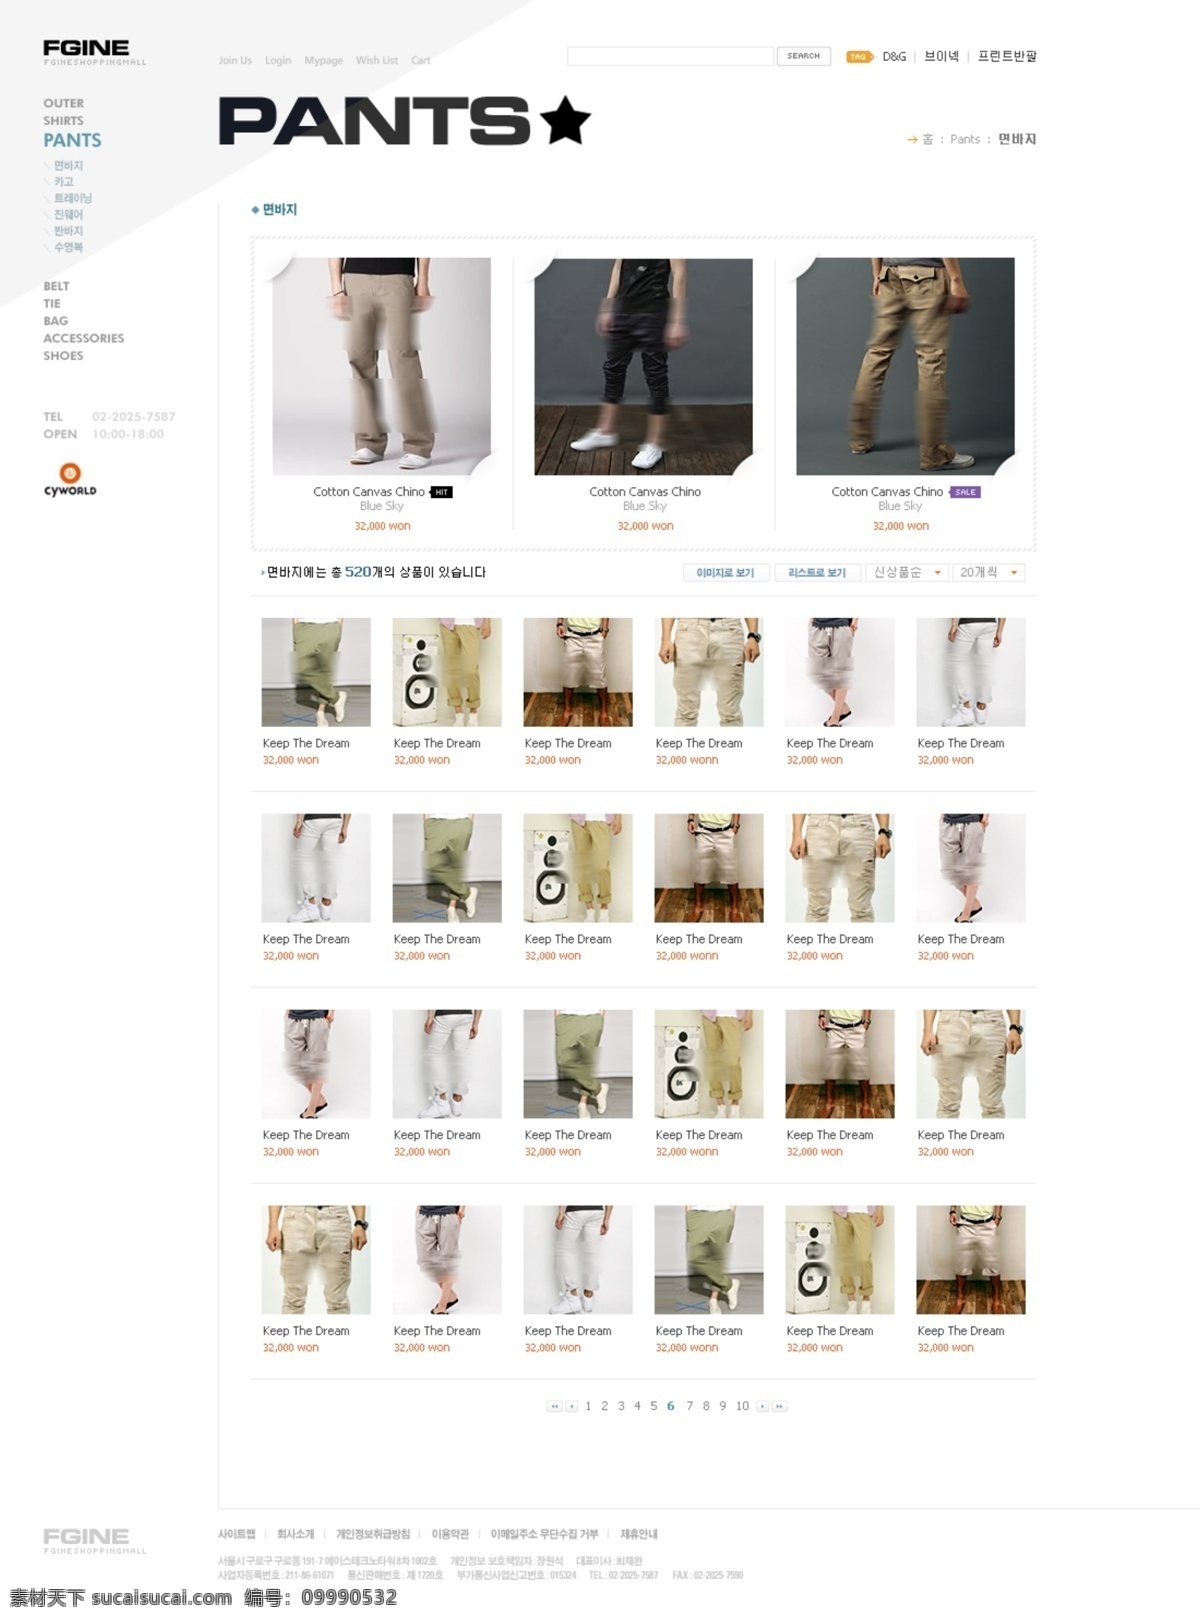 时尚 韩国 商业 包包 网页模板 按钮 韩国网站 内容页 商业素材 时尚图片 最终页 结果页 网页素材